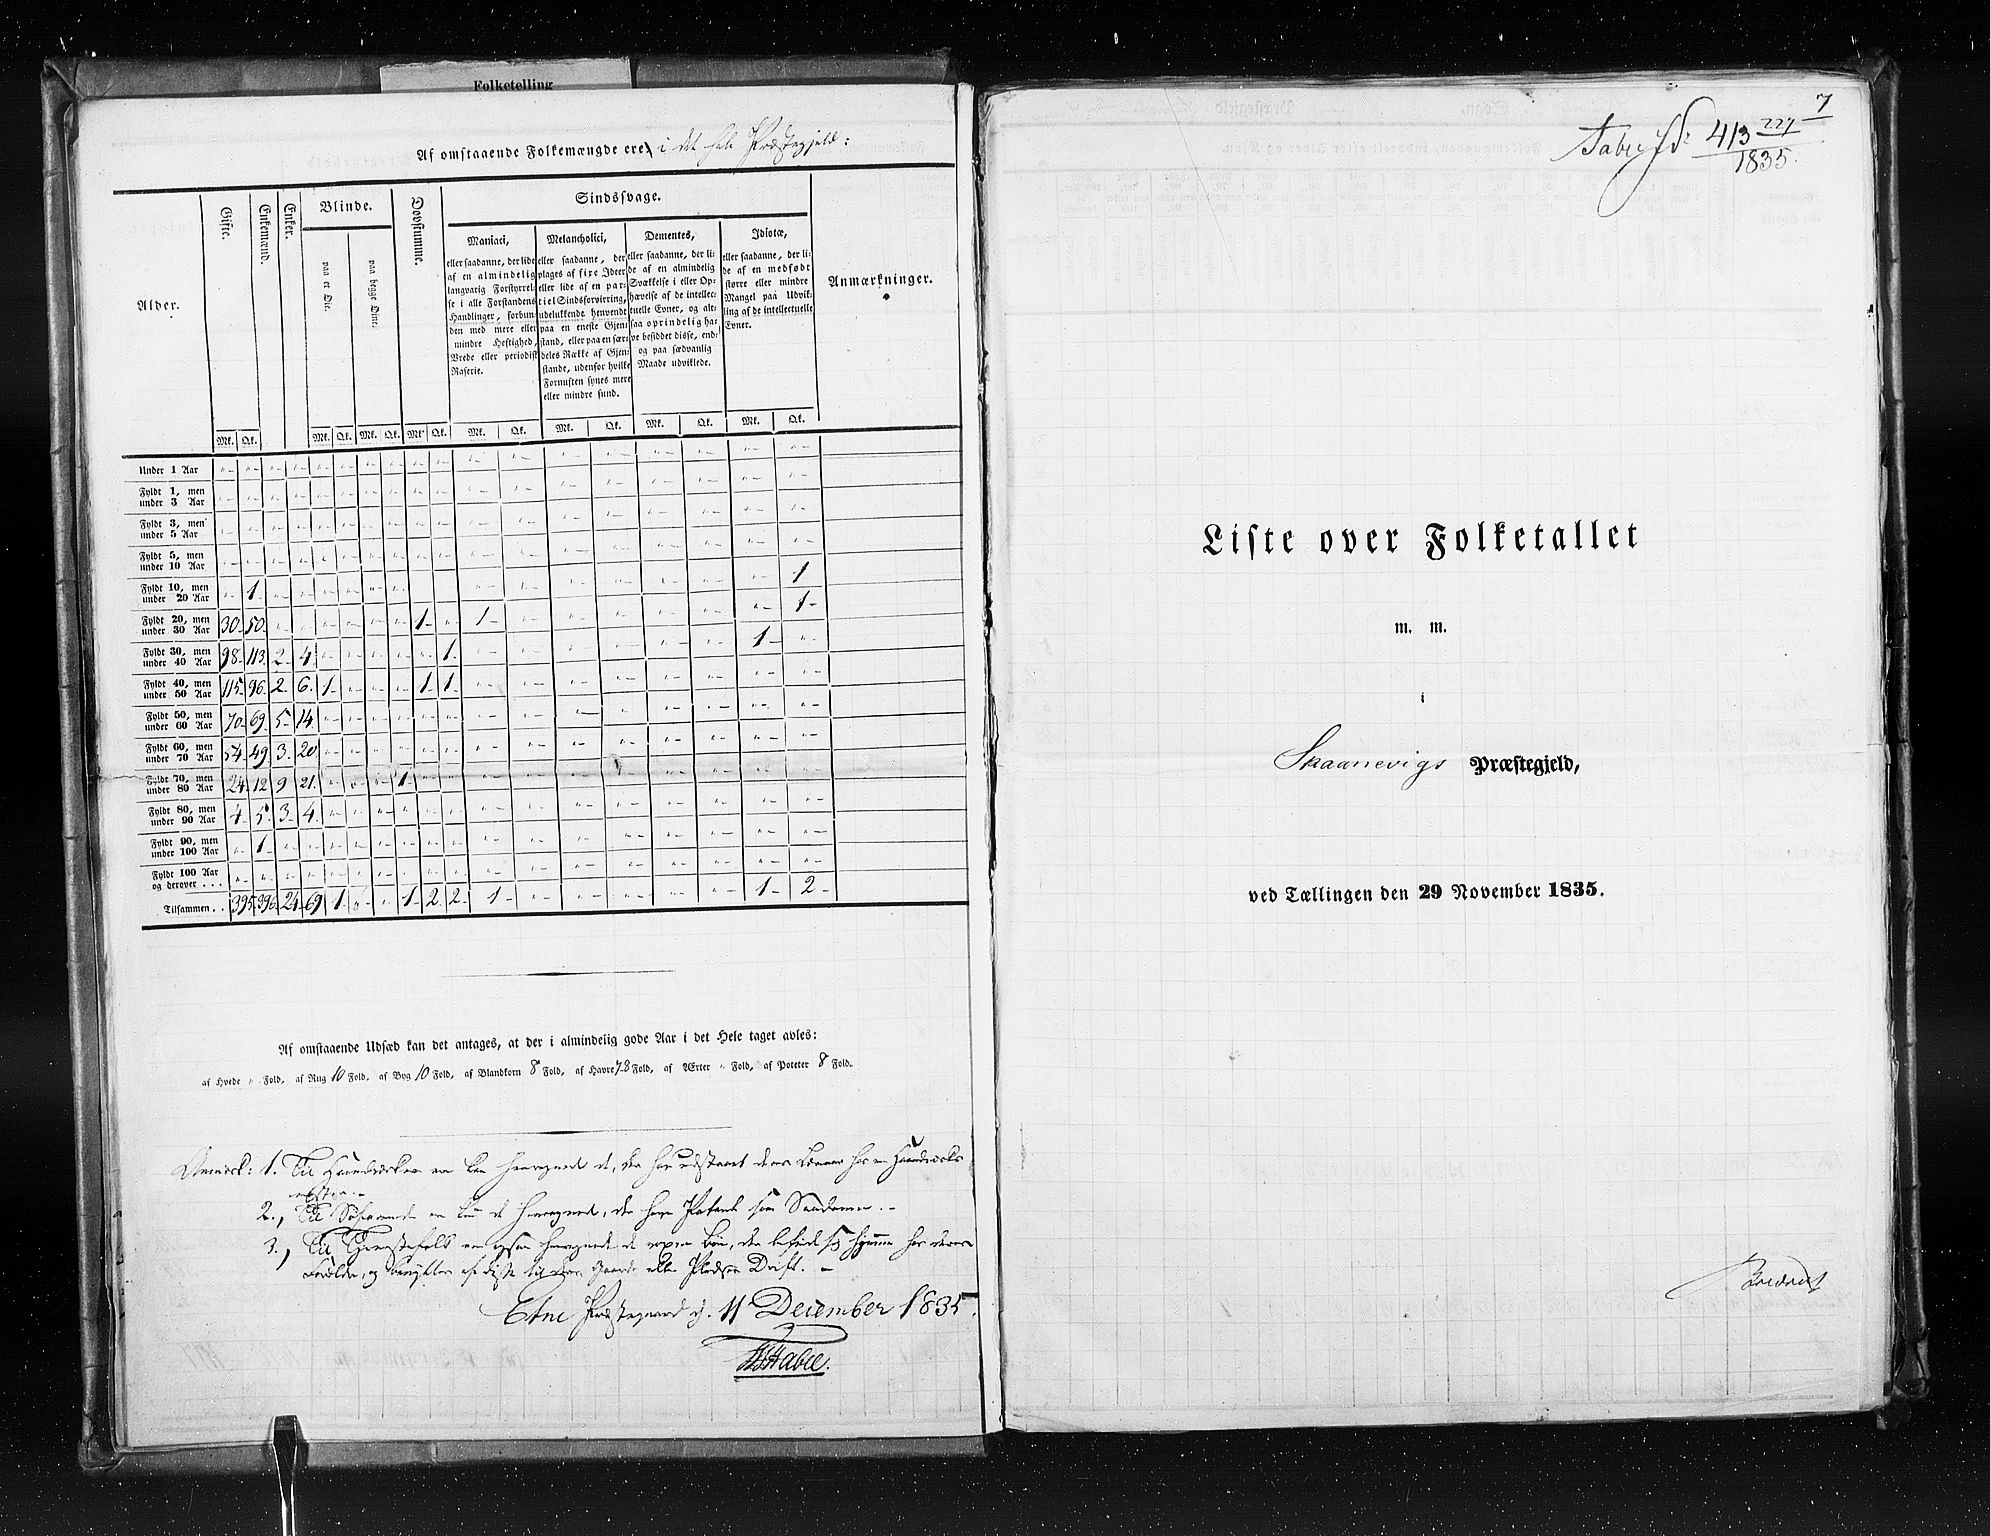 RA, Census 1835, vol. 7: Søndre Bergenhus amt og Nordre Bergenhus amt, 1835, p. 7